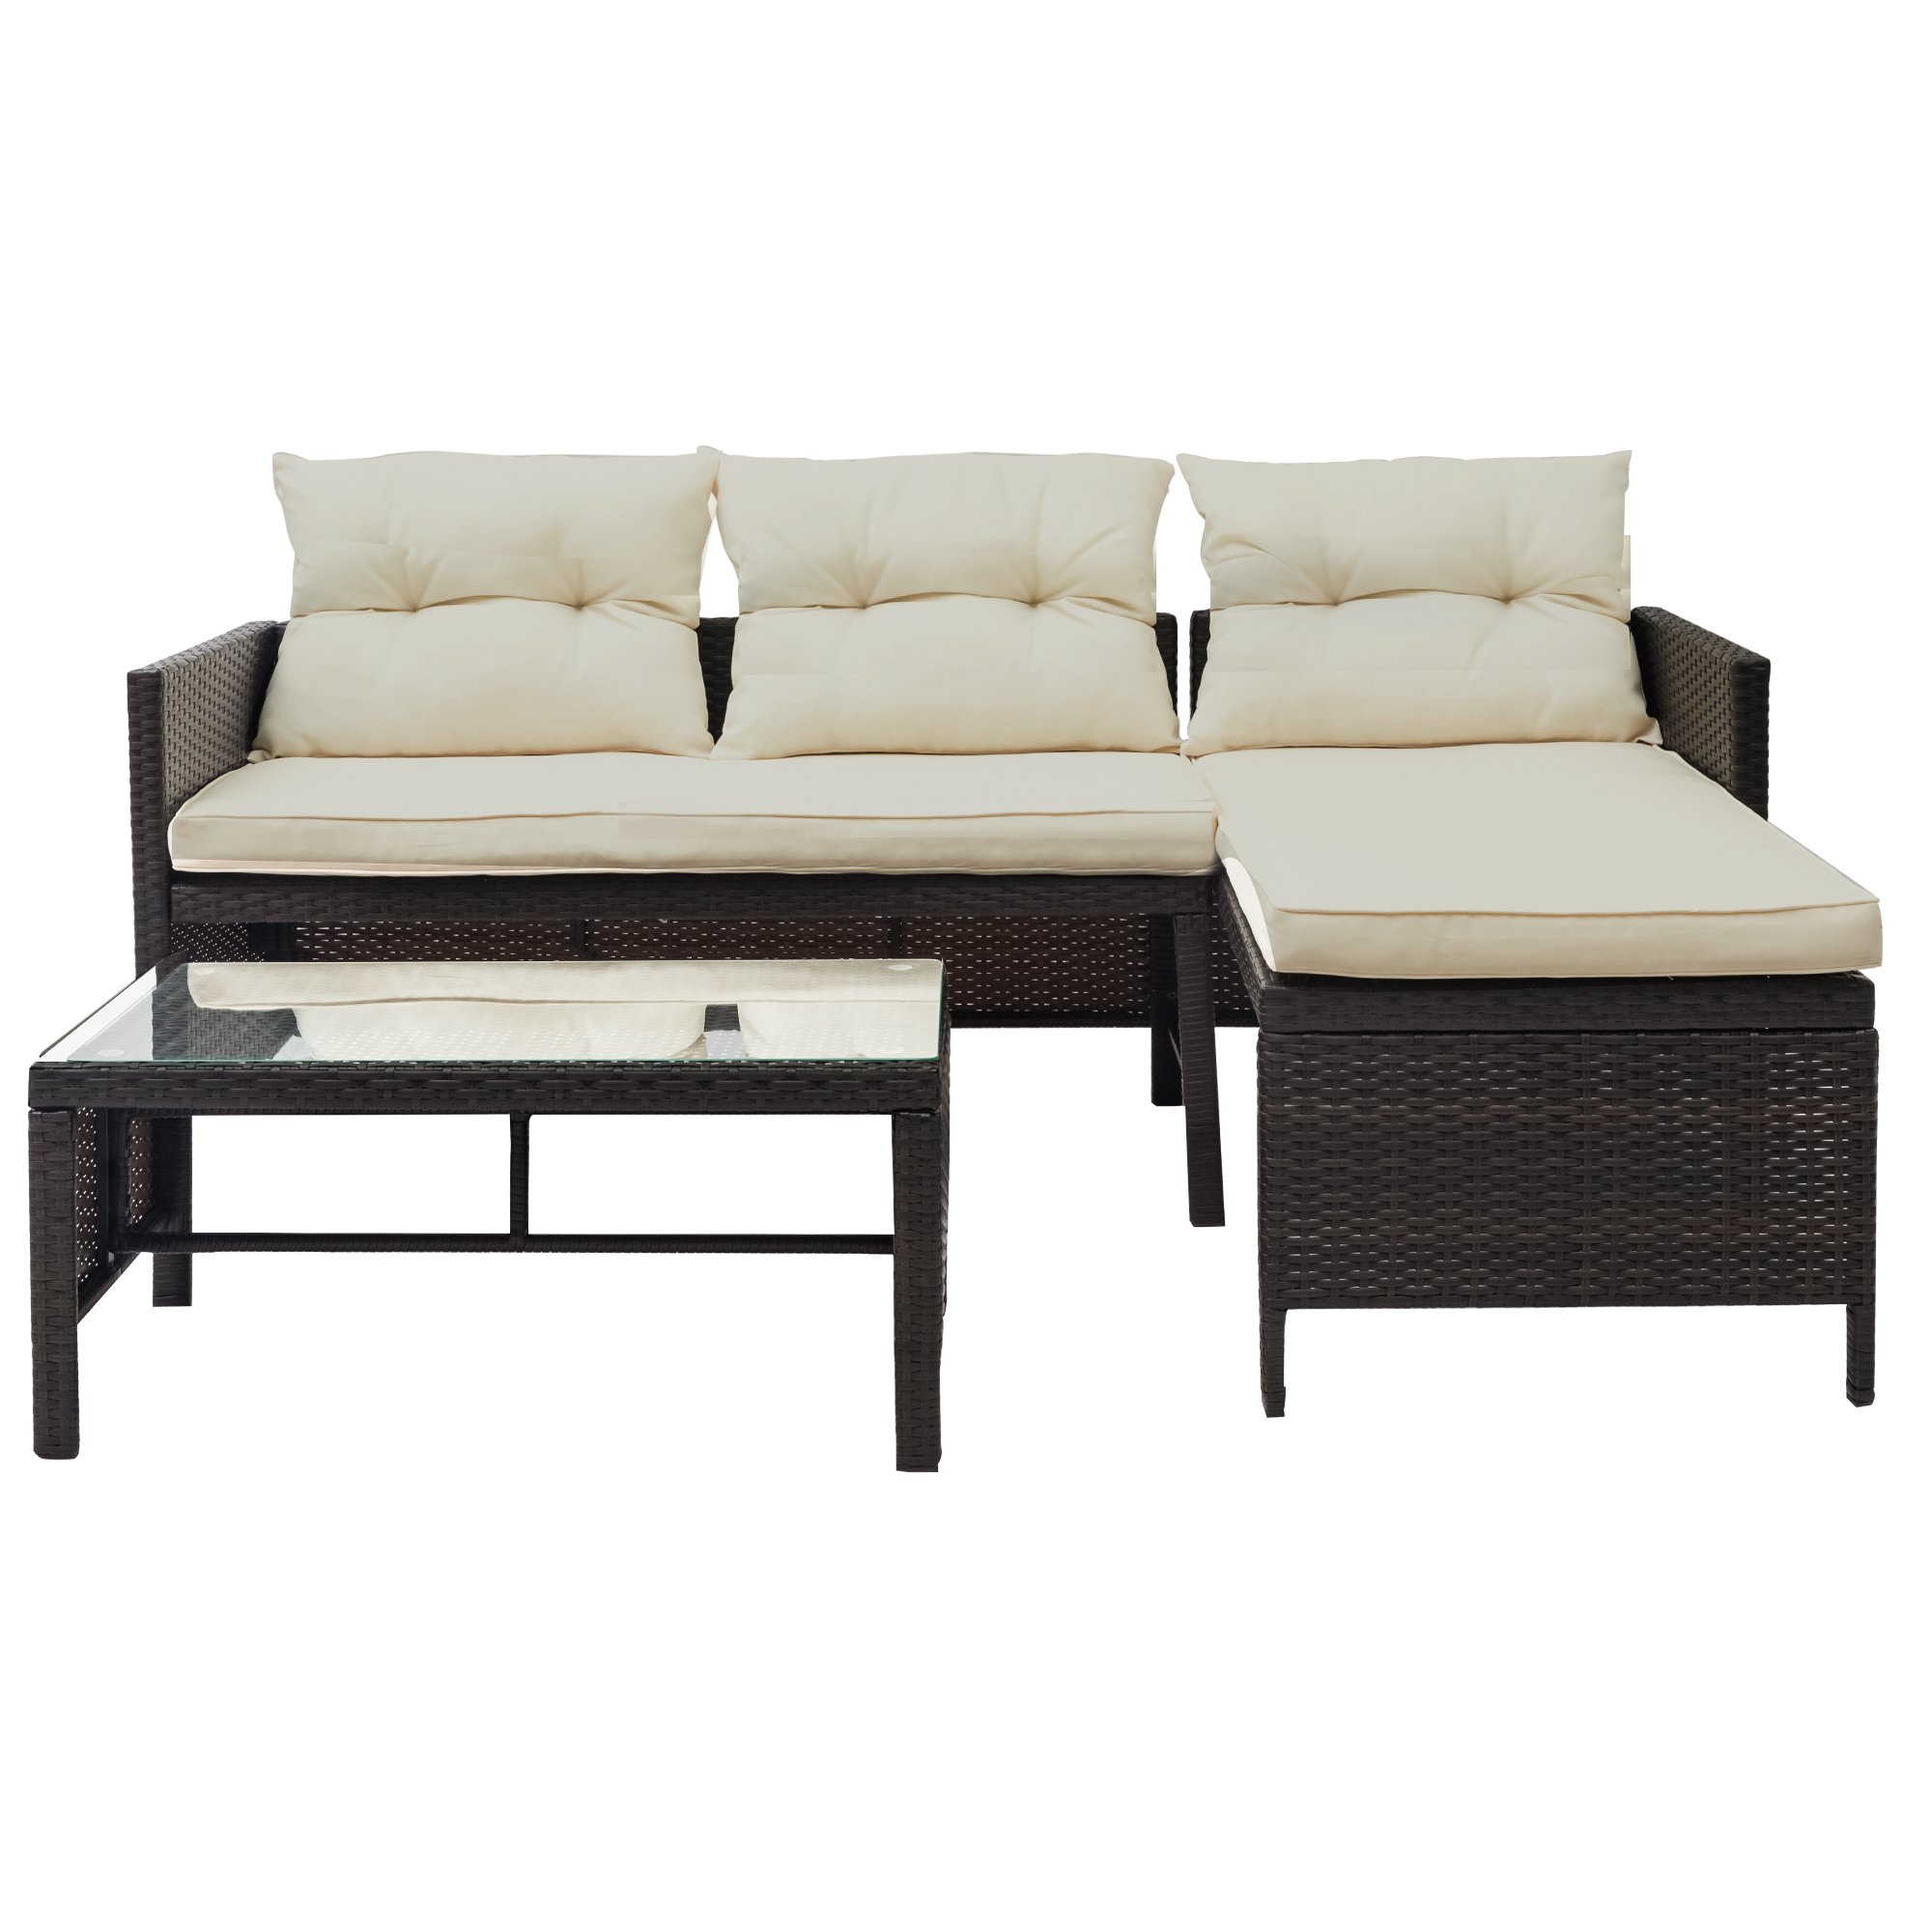 3 PCS Outdoor Rattan Furniture Sofa Set with cushions-CASAINC